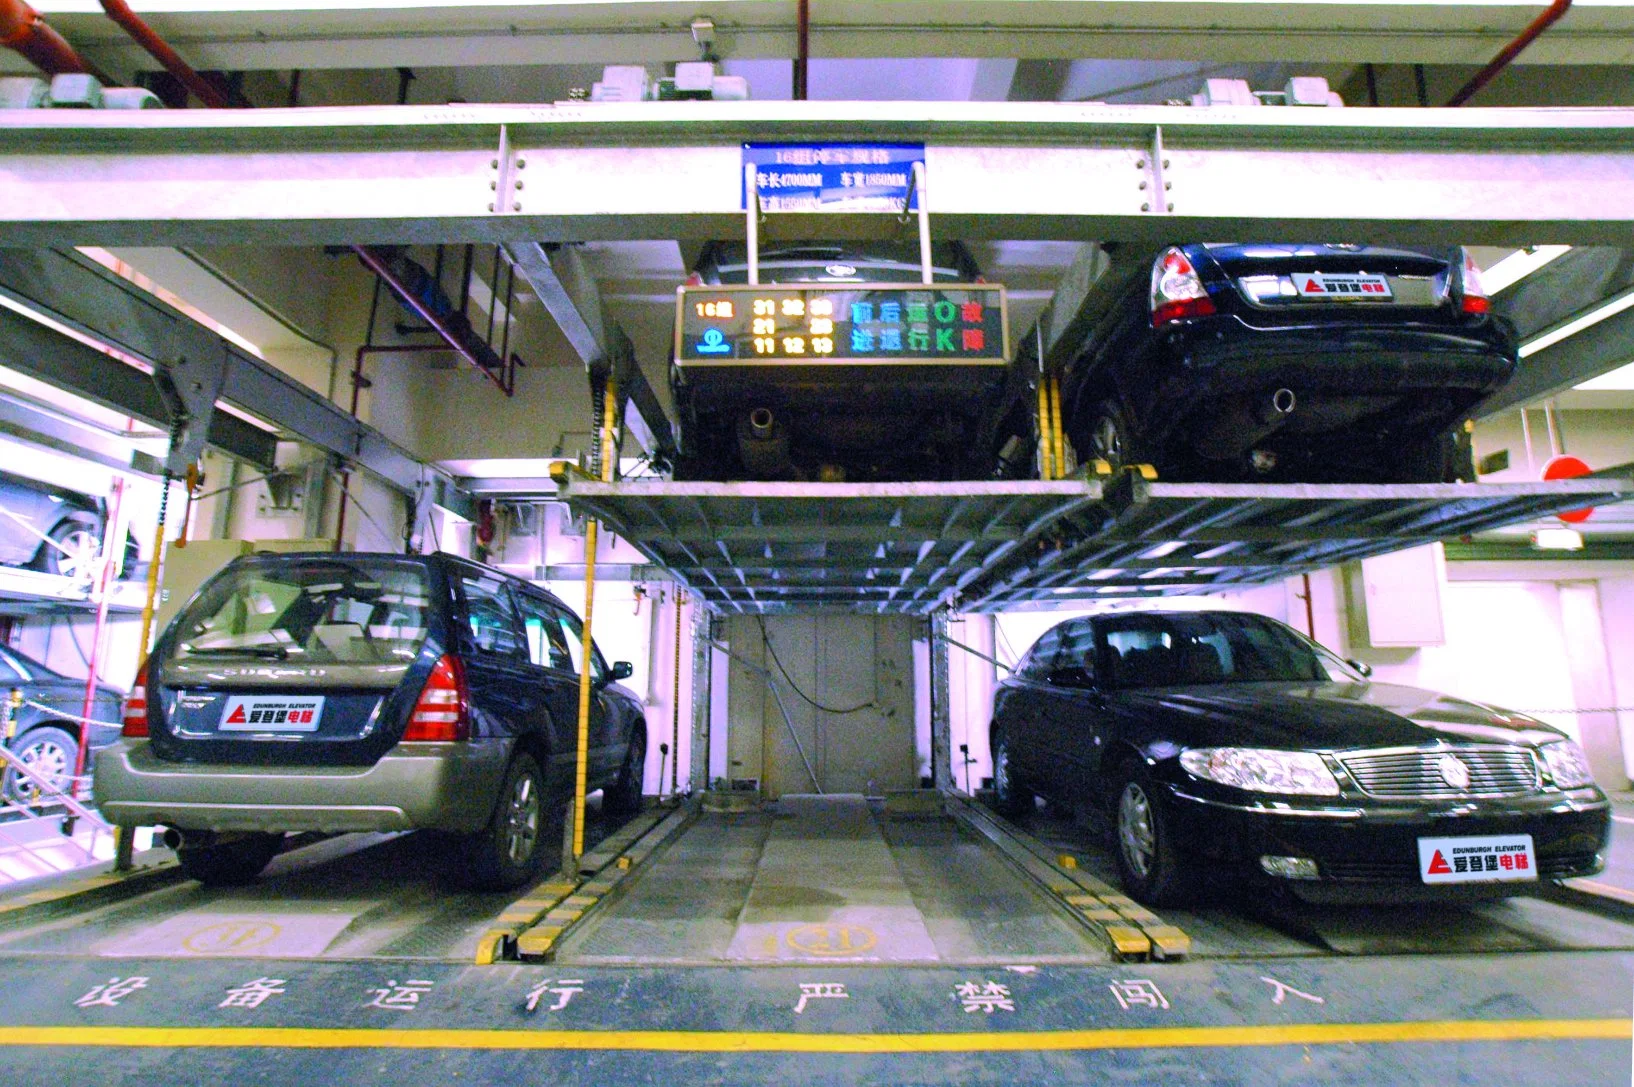 Système de stationnement pour voitures à Édimbourg pour les magasins/centre commercial/hôpital/projets publics.